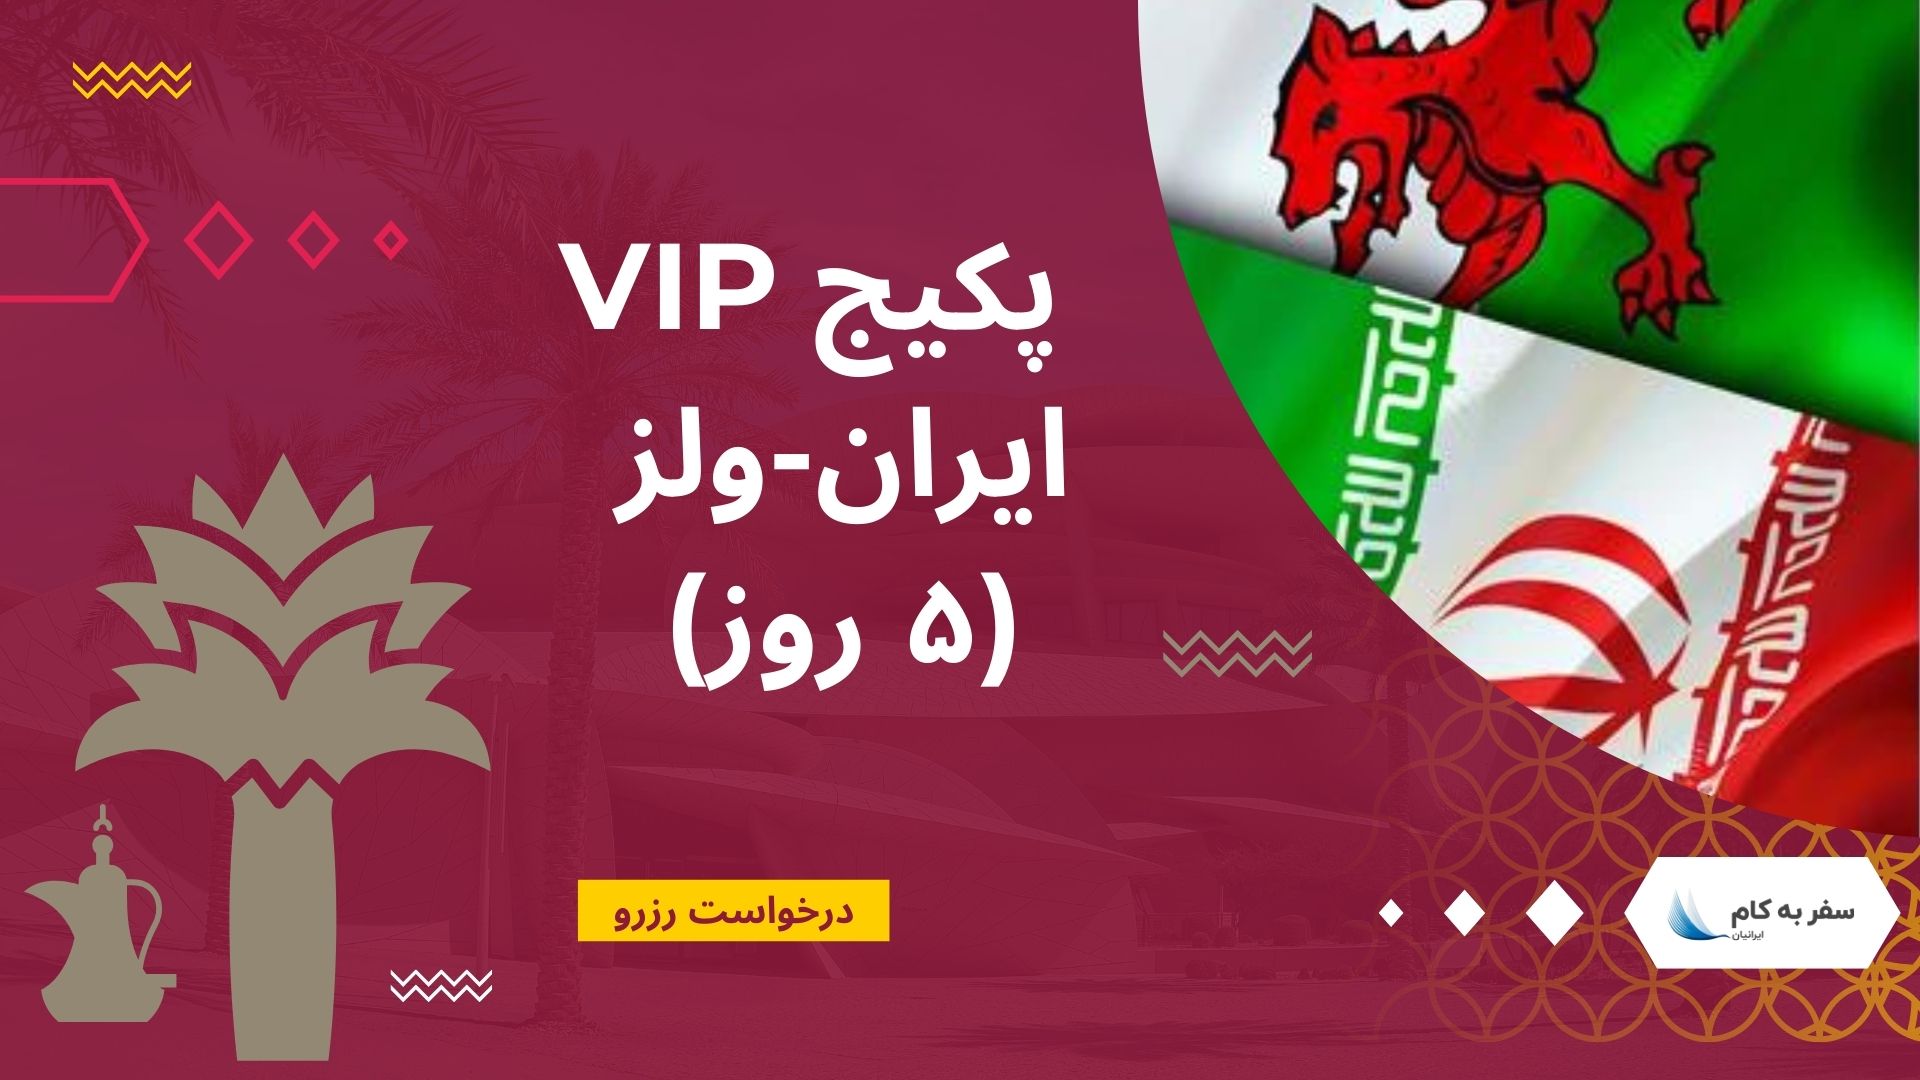 پکیج VIP ایران ولز (۵ روز)